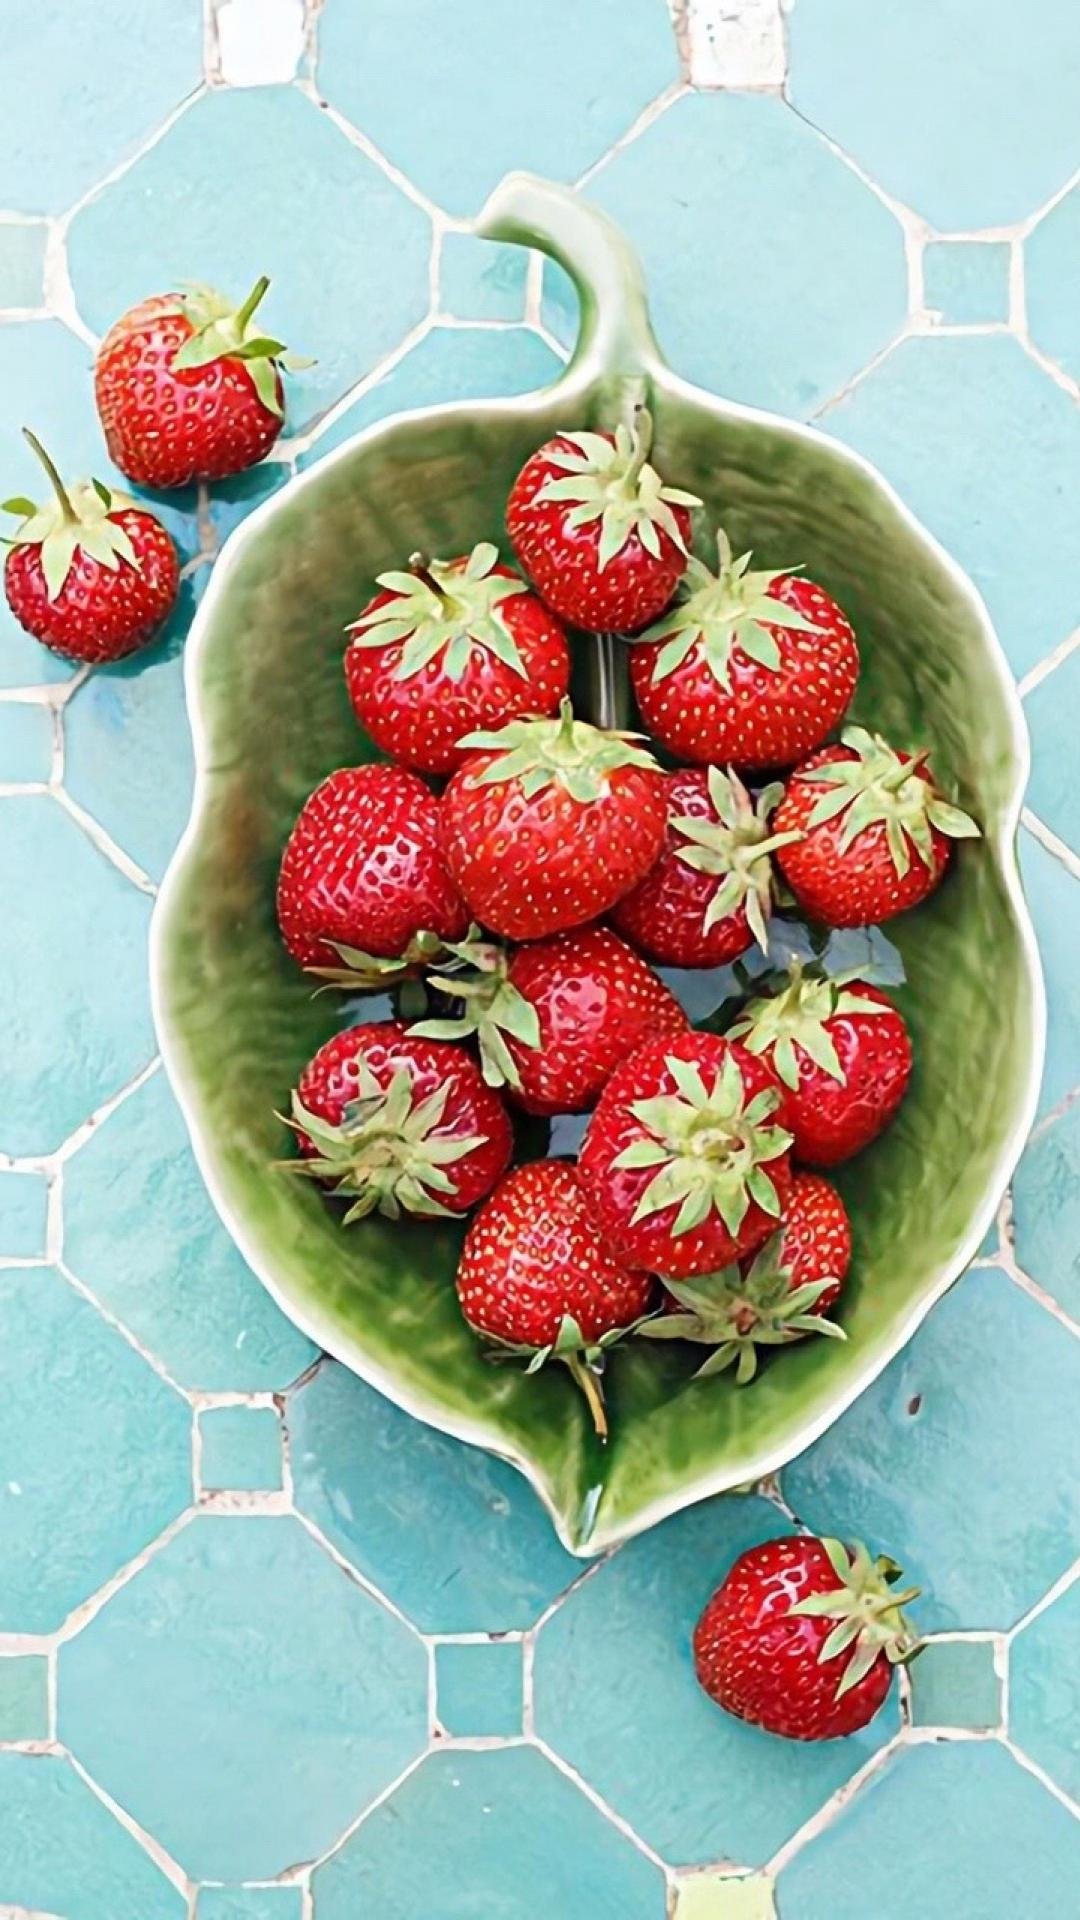 营养丰富的草莓,高清图片,手机壁纸